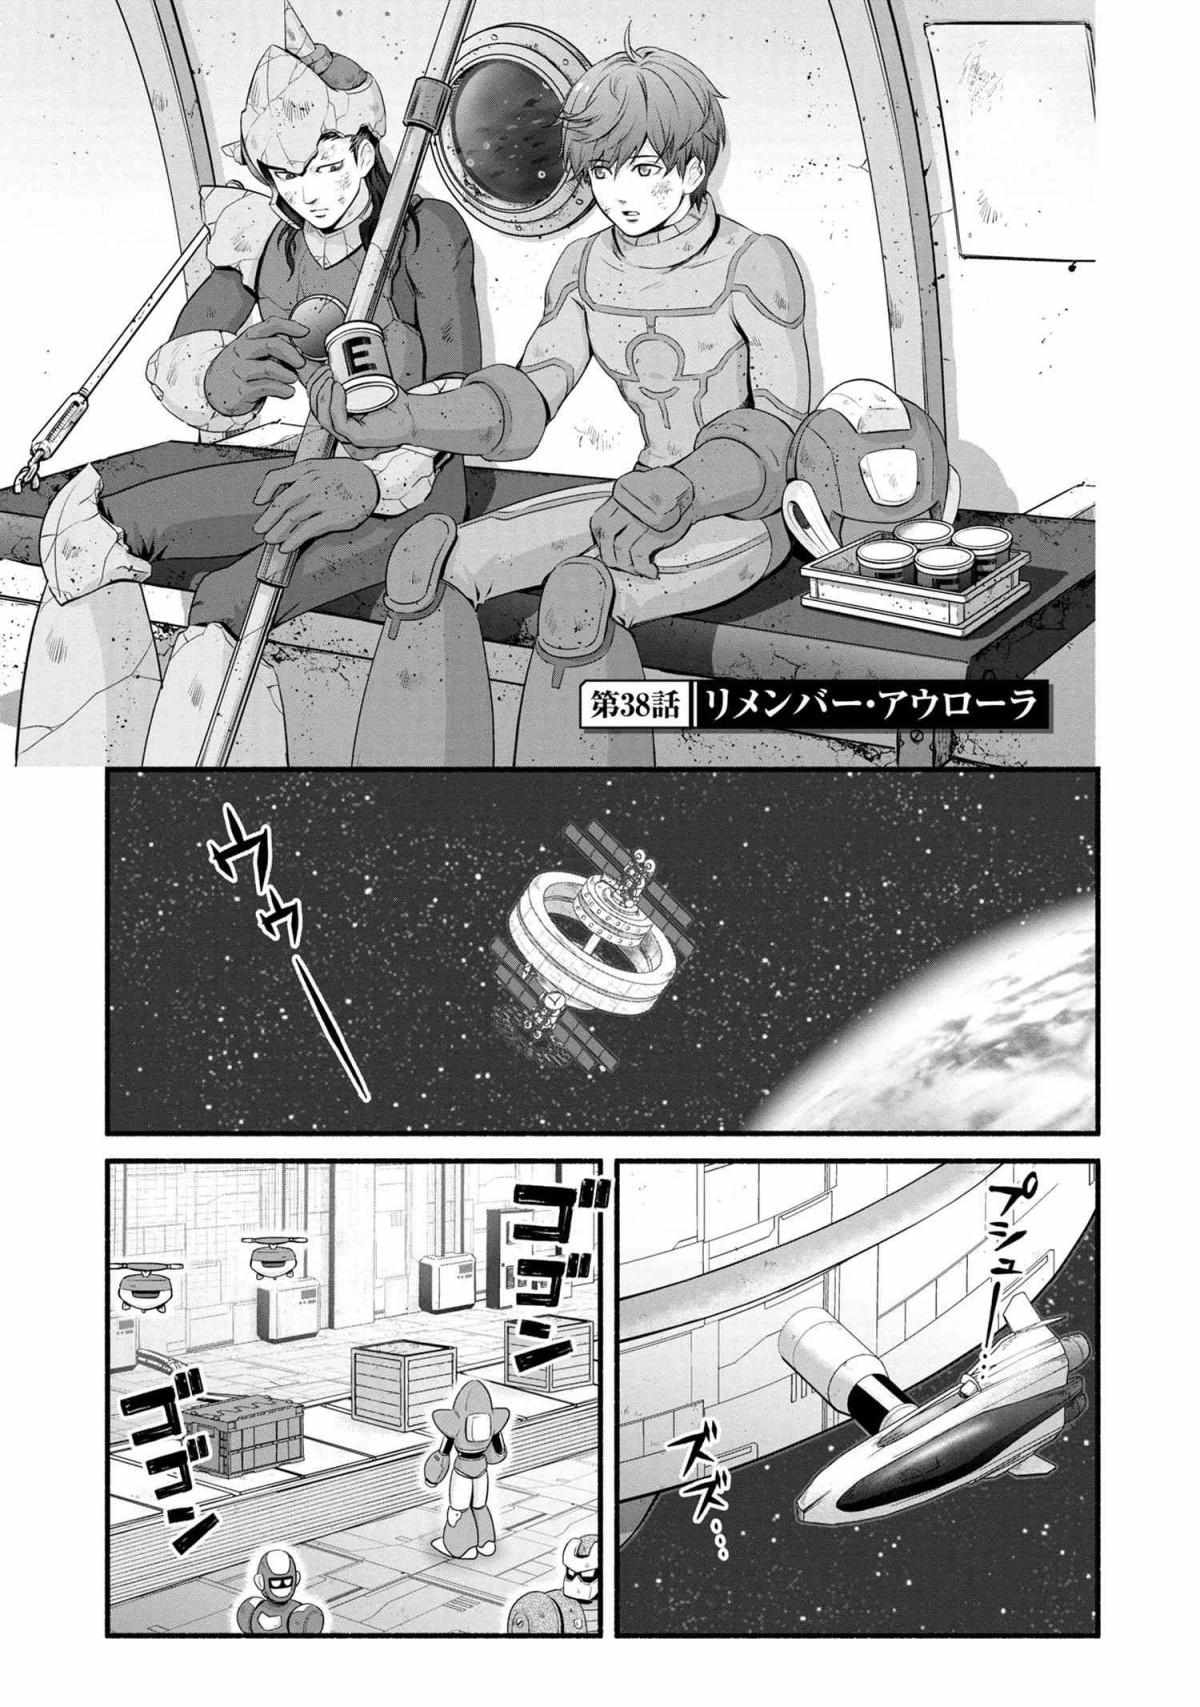 Rockman-San - 38 page 4-912e6768